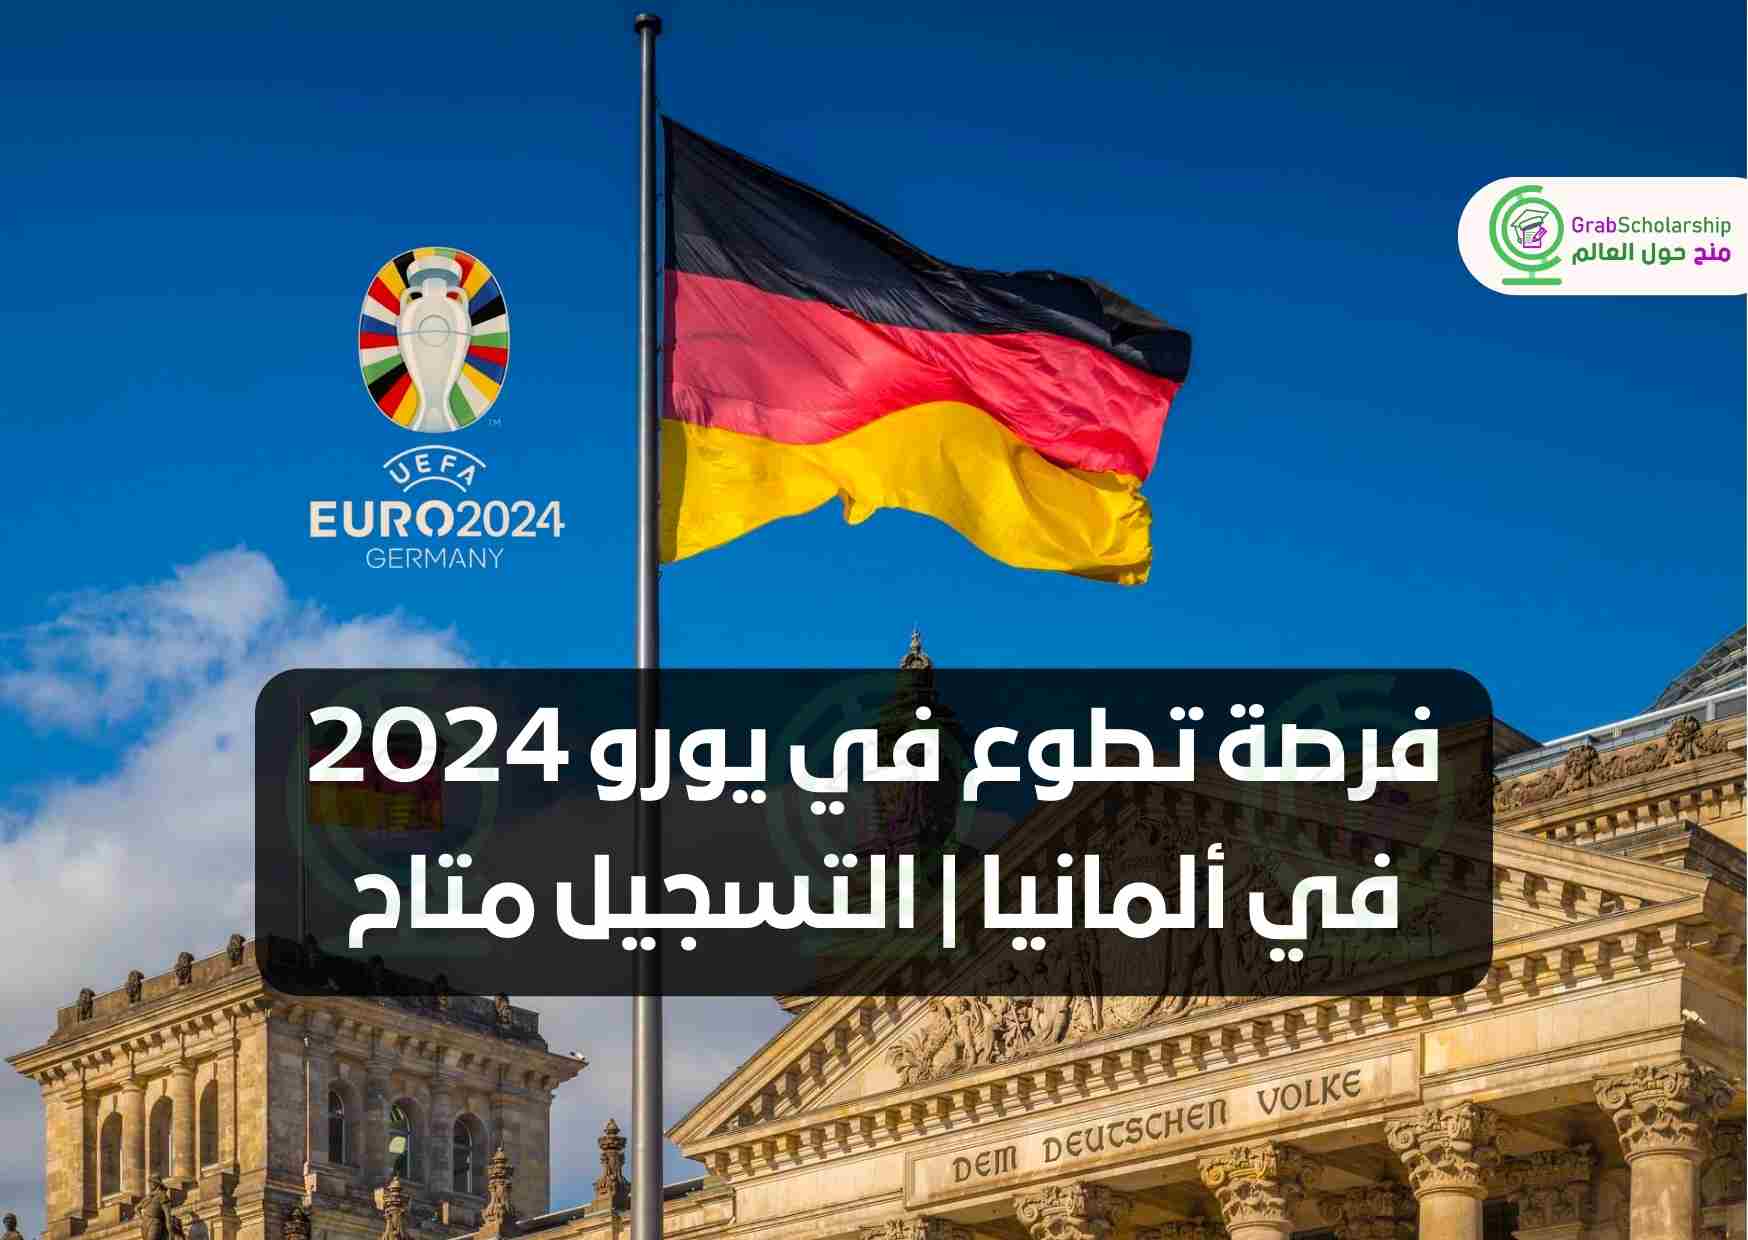 فرصة تطوع في يورو 2024 في ألمانيا | التسجيل متاح